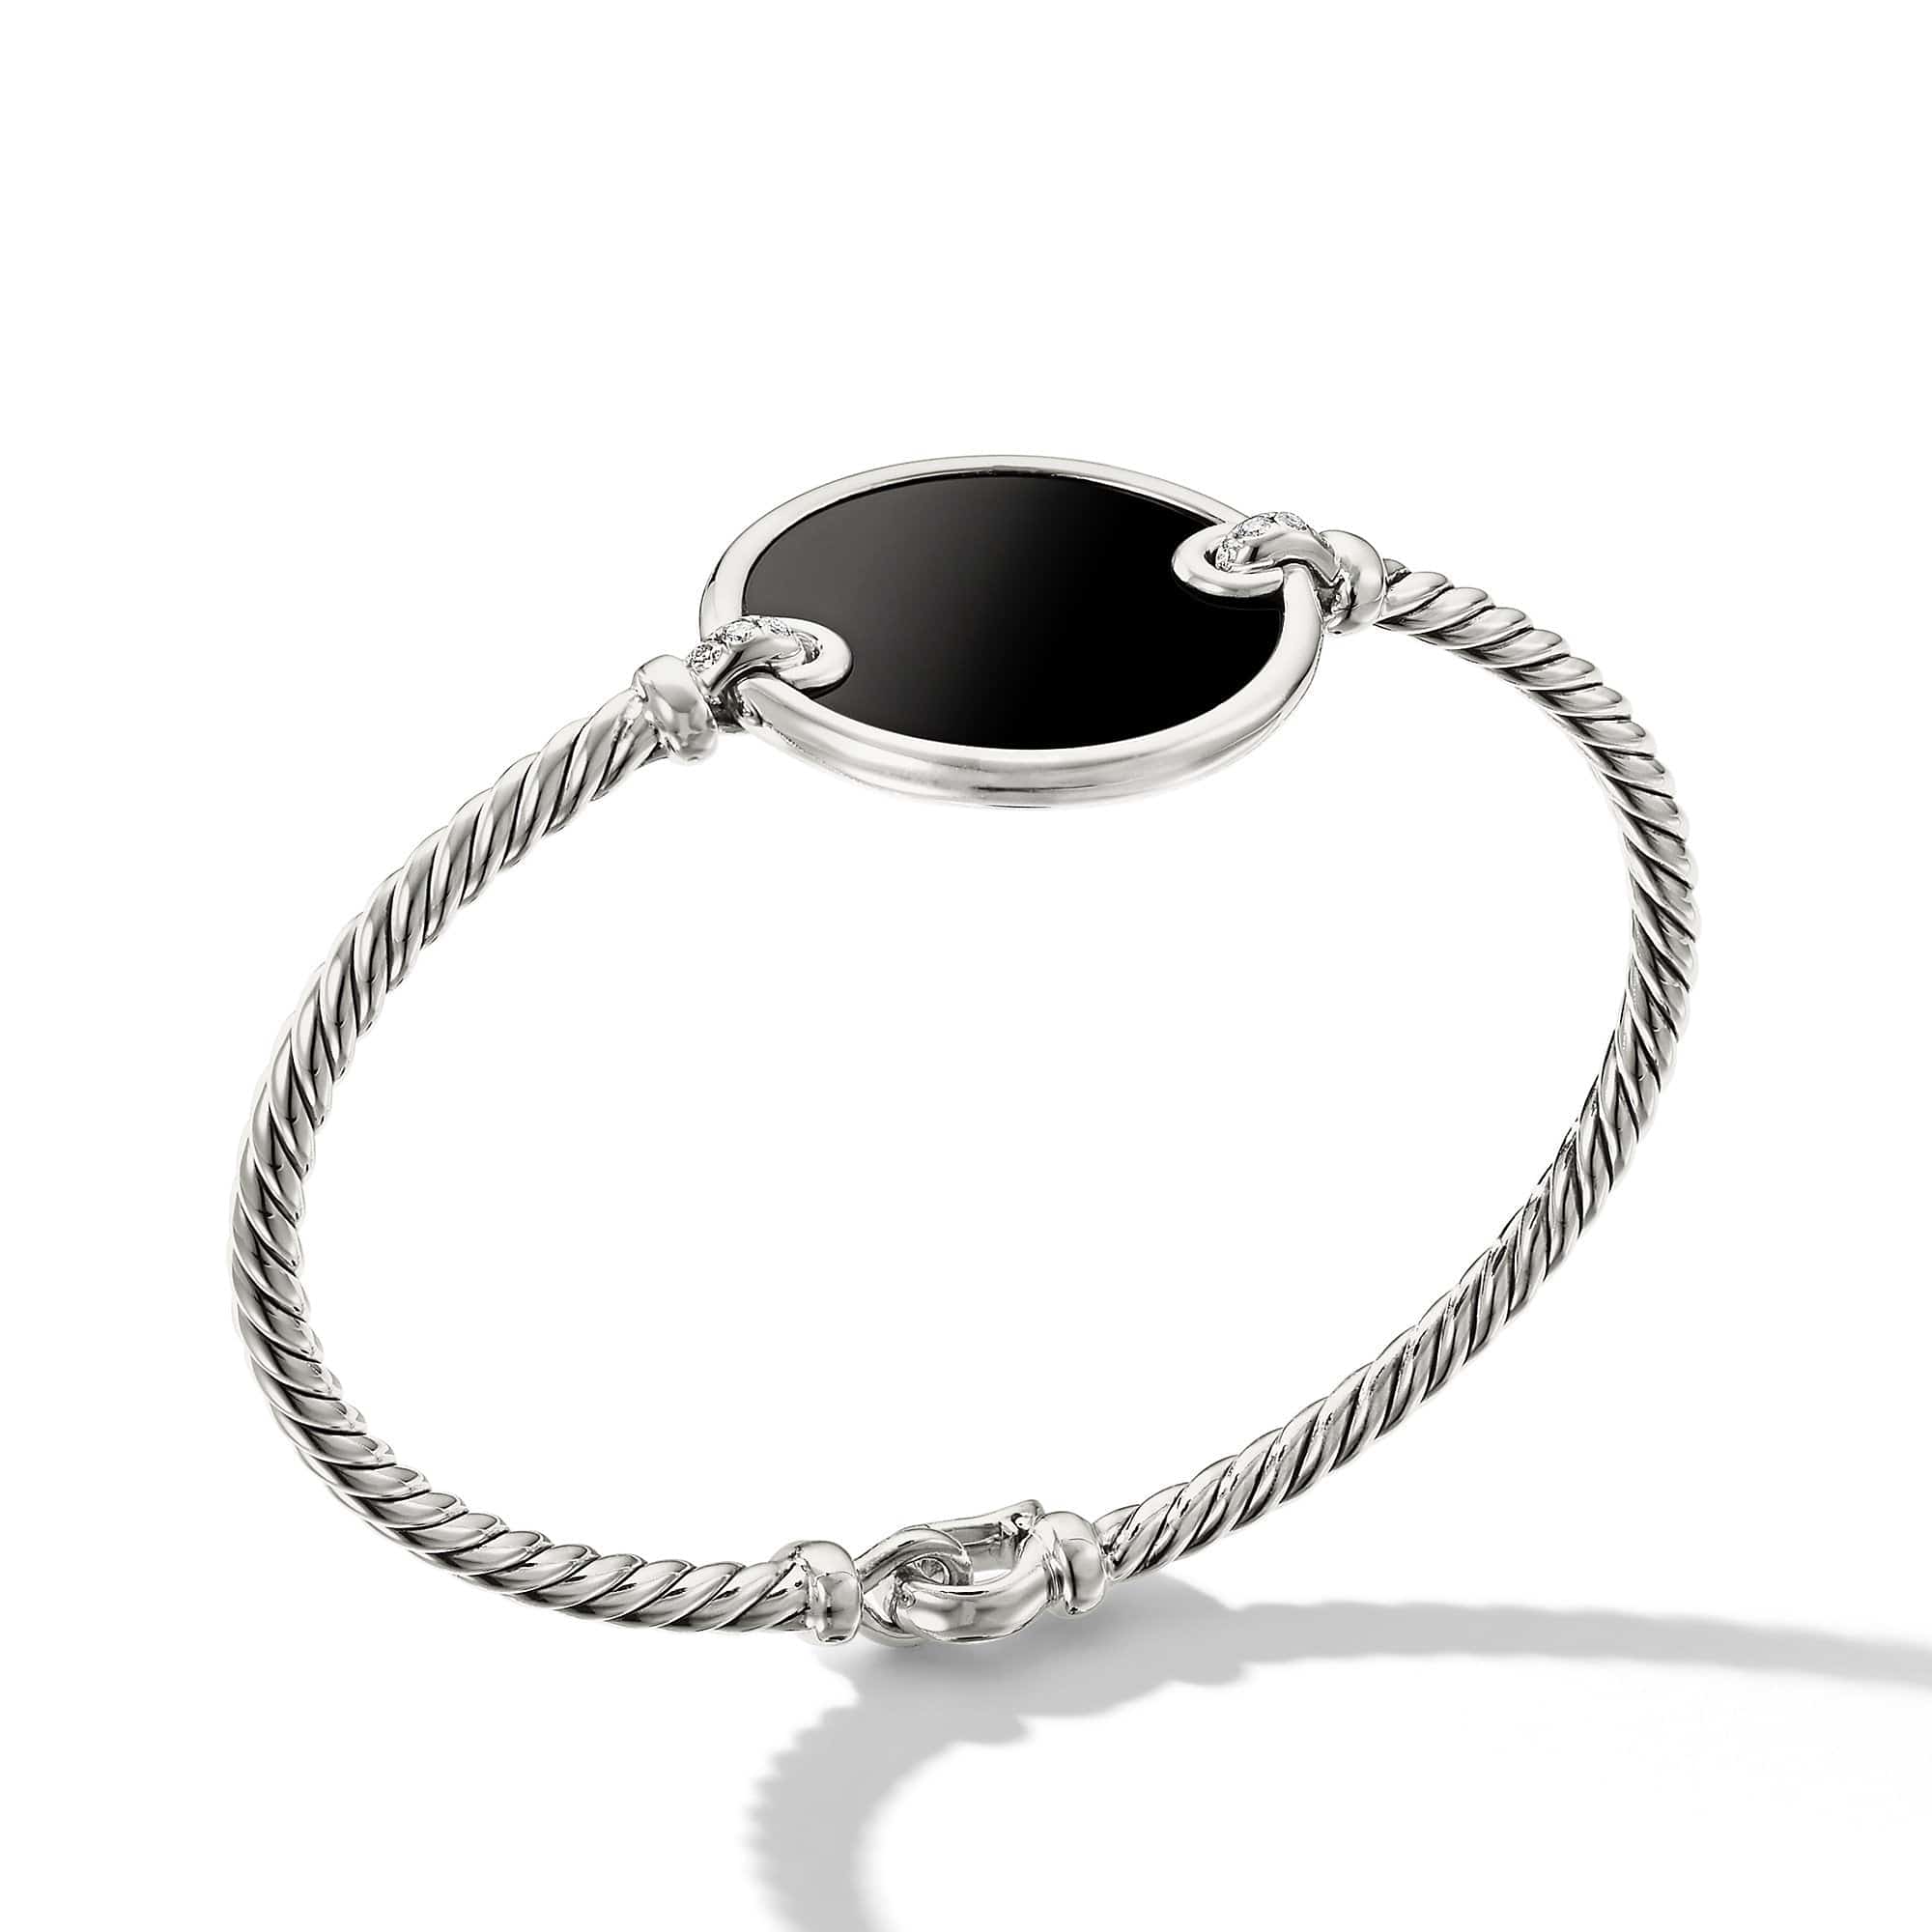 DY Elements Bracelet with Black Onyx and Pavé Diamonds